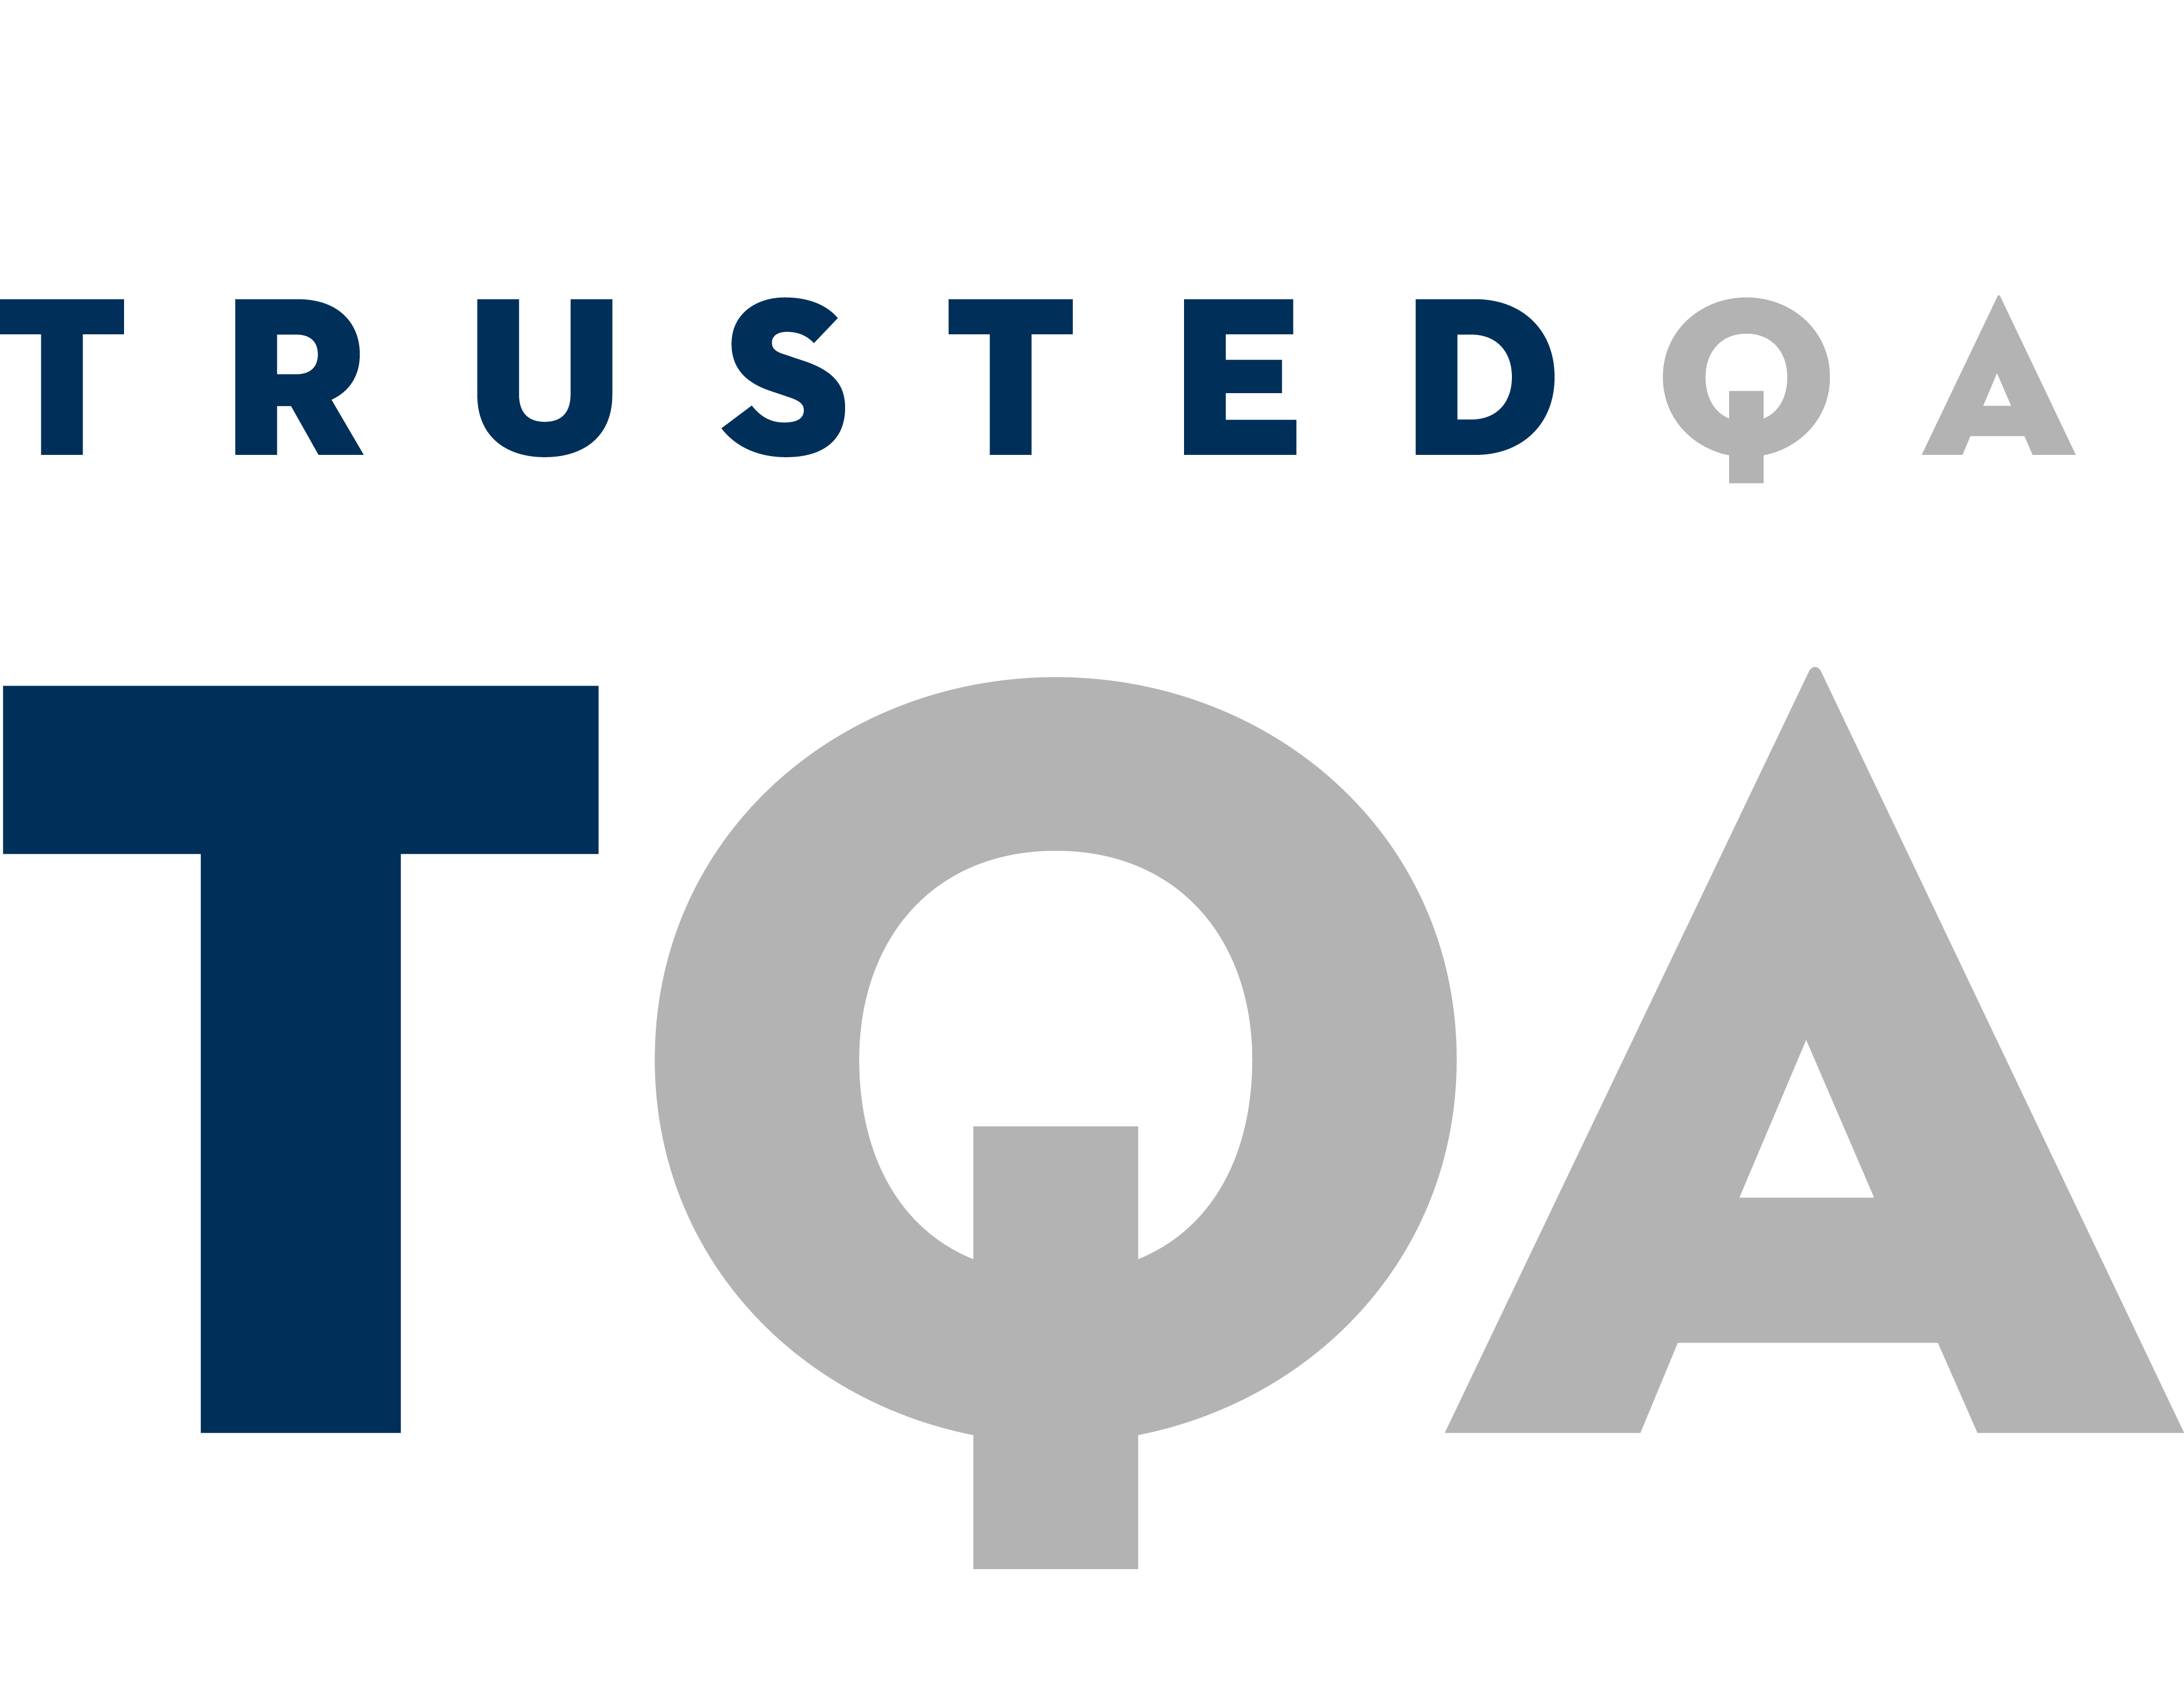 TrustedQA Company Logo